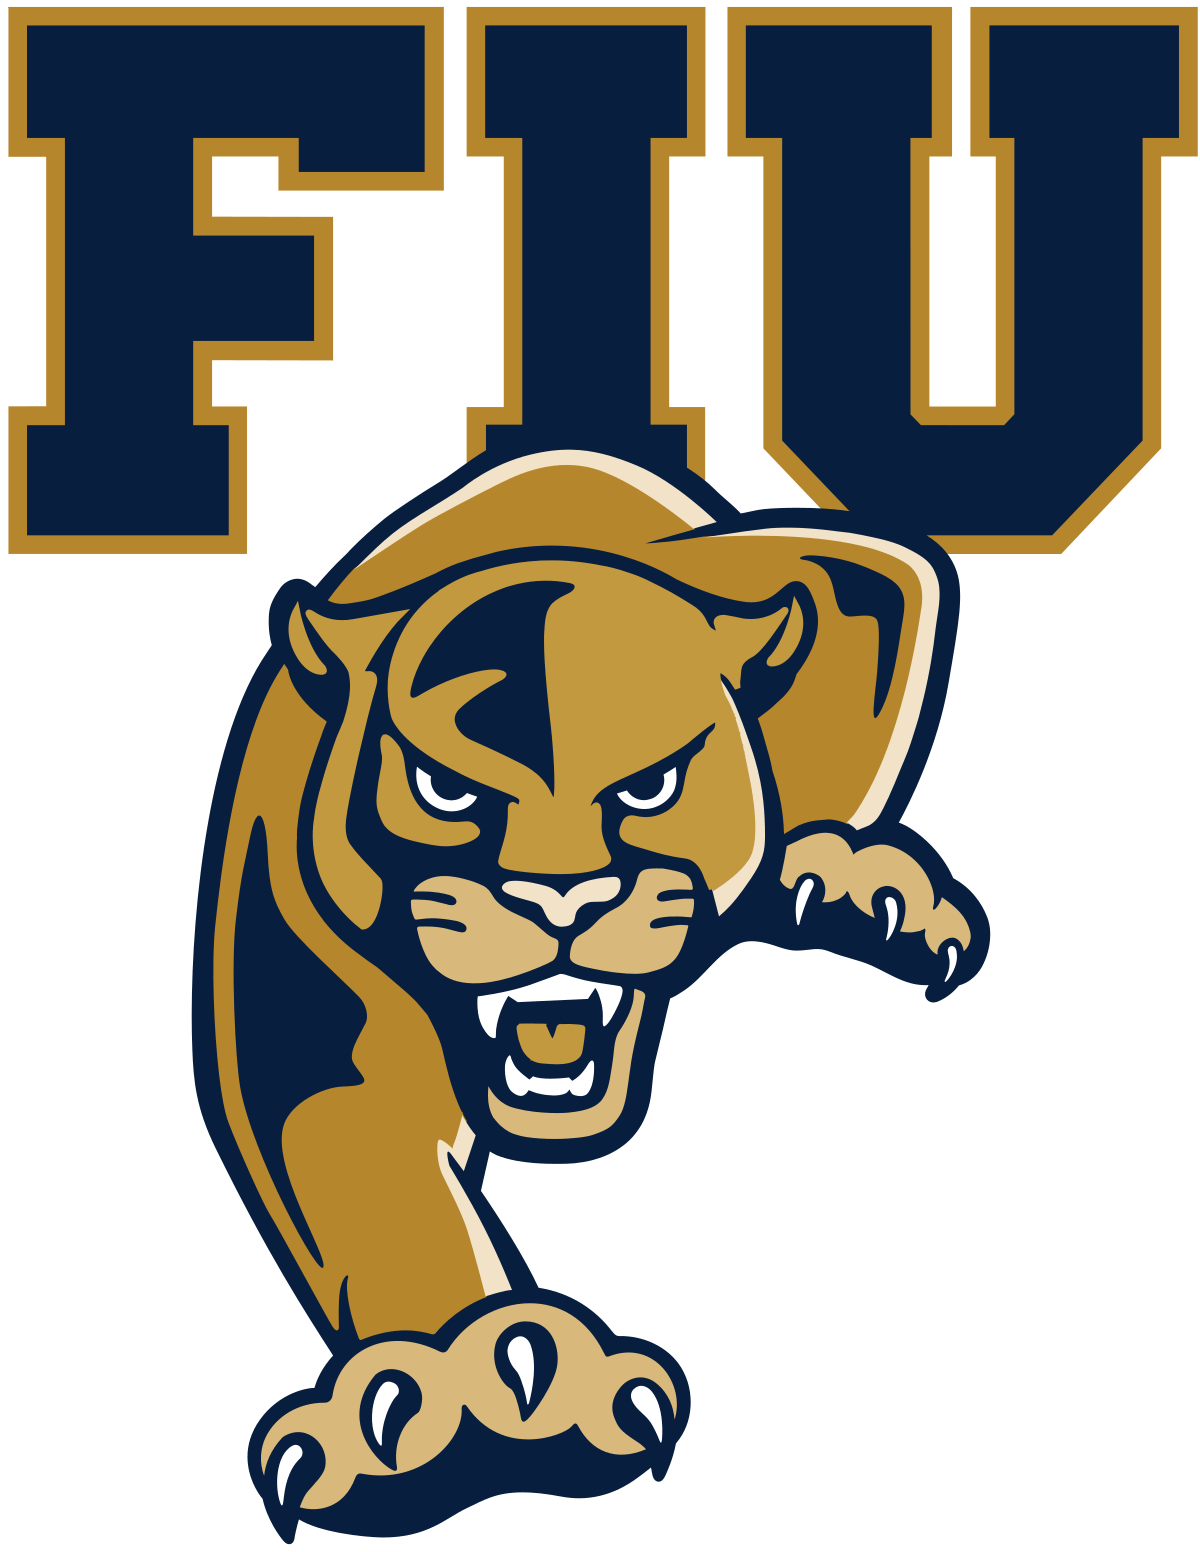 FIU Logo - FIU Panthers